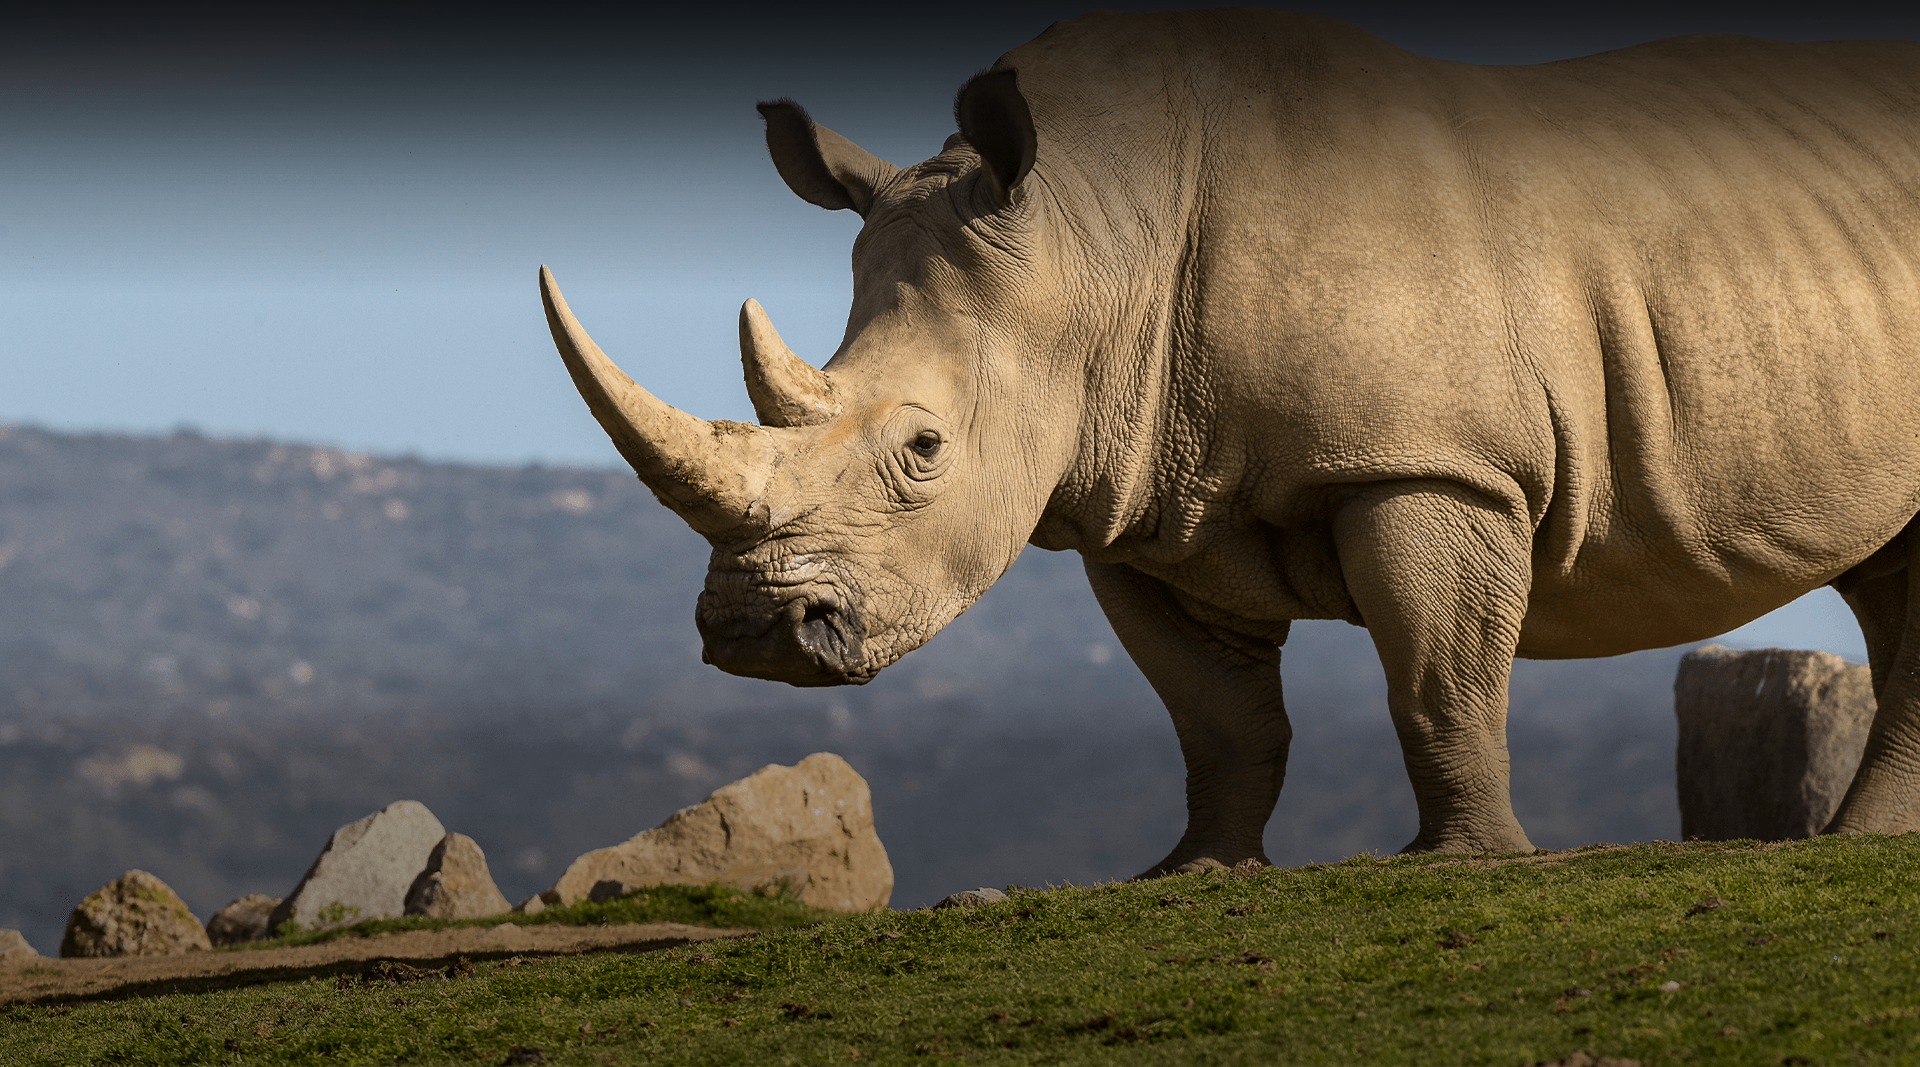 Rhino stands in a field